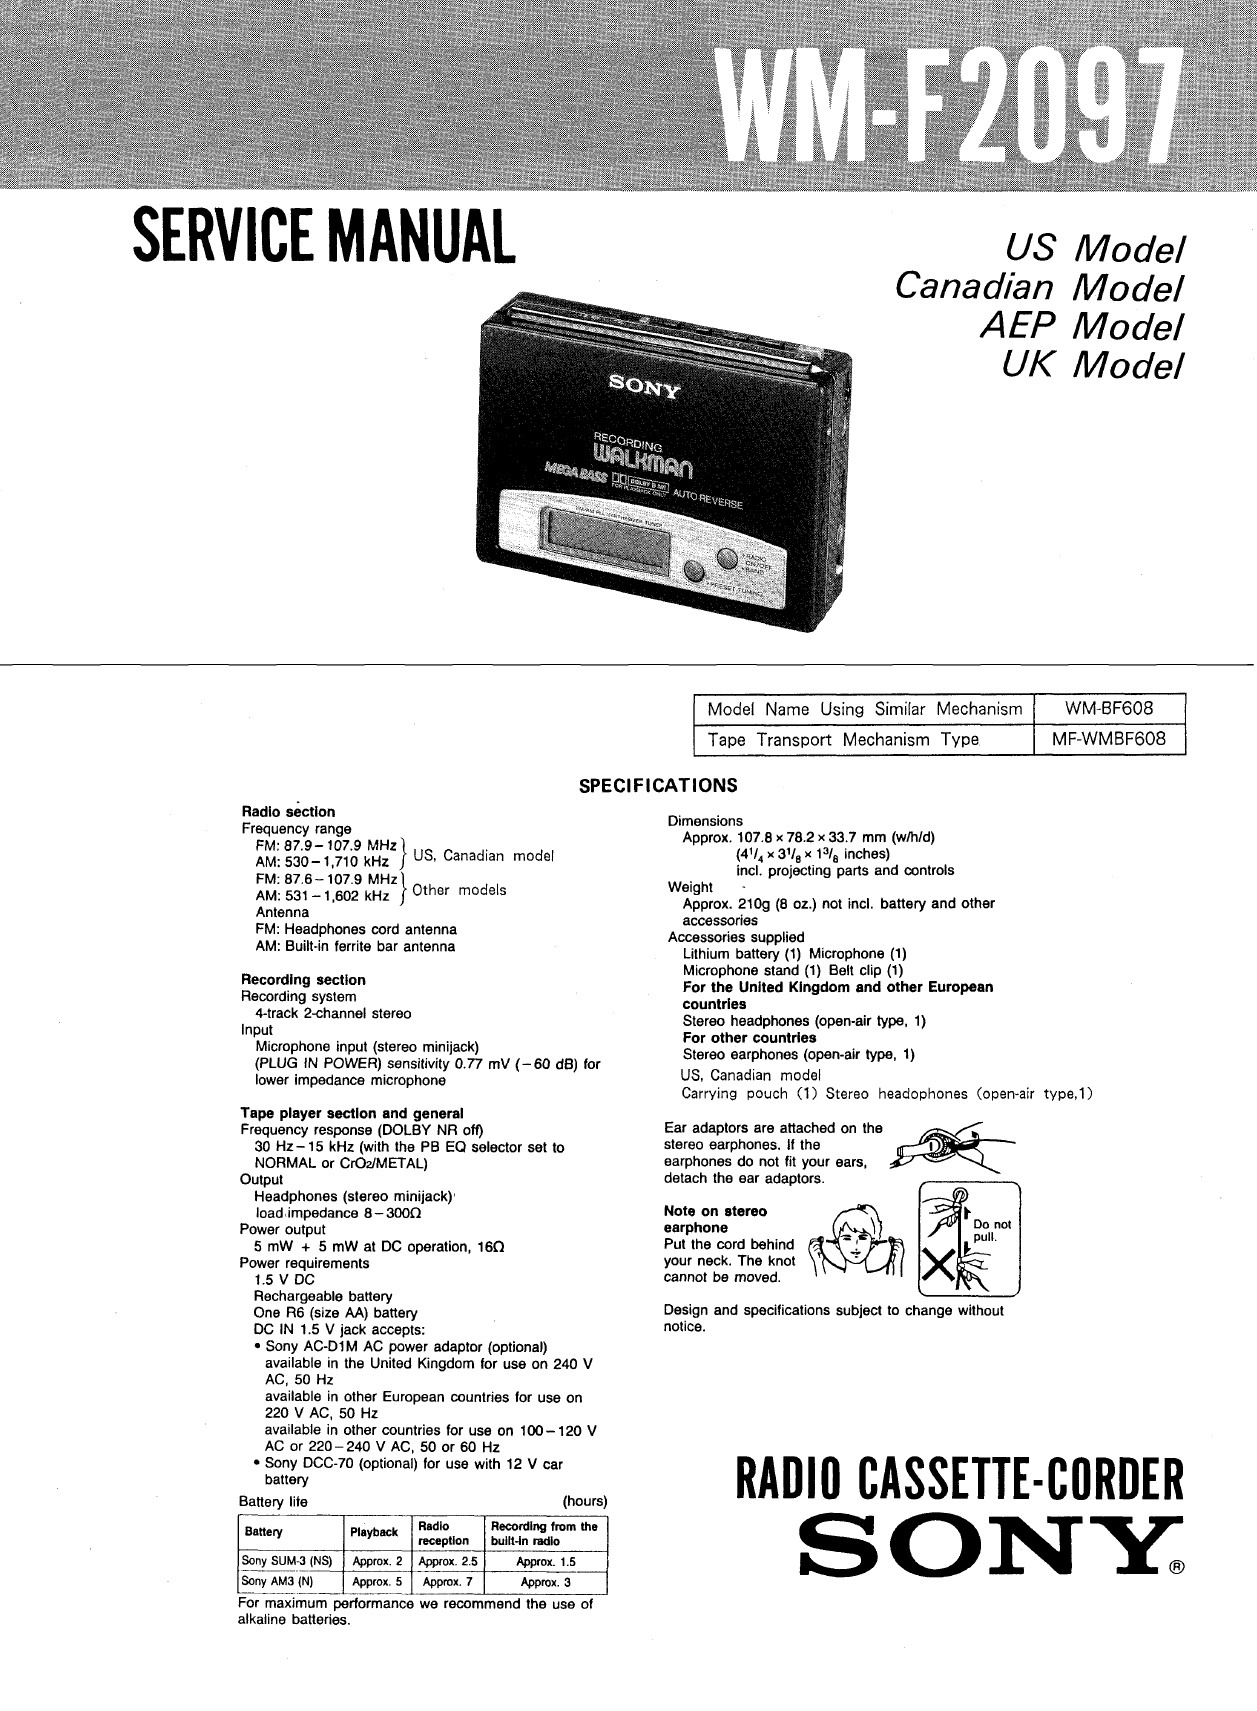 Sony WM-F 2097-Manual-1991.jpg